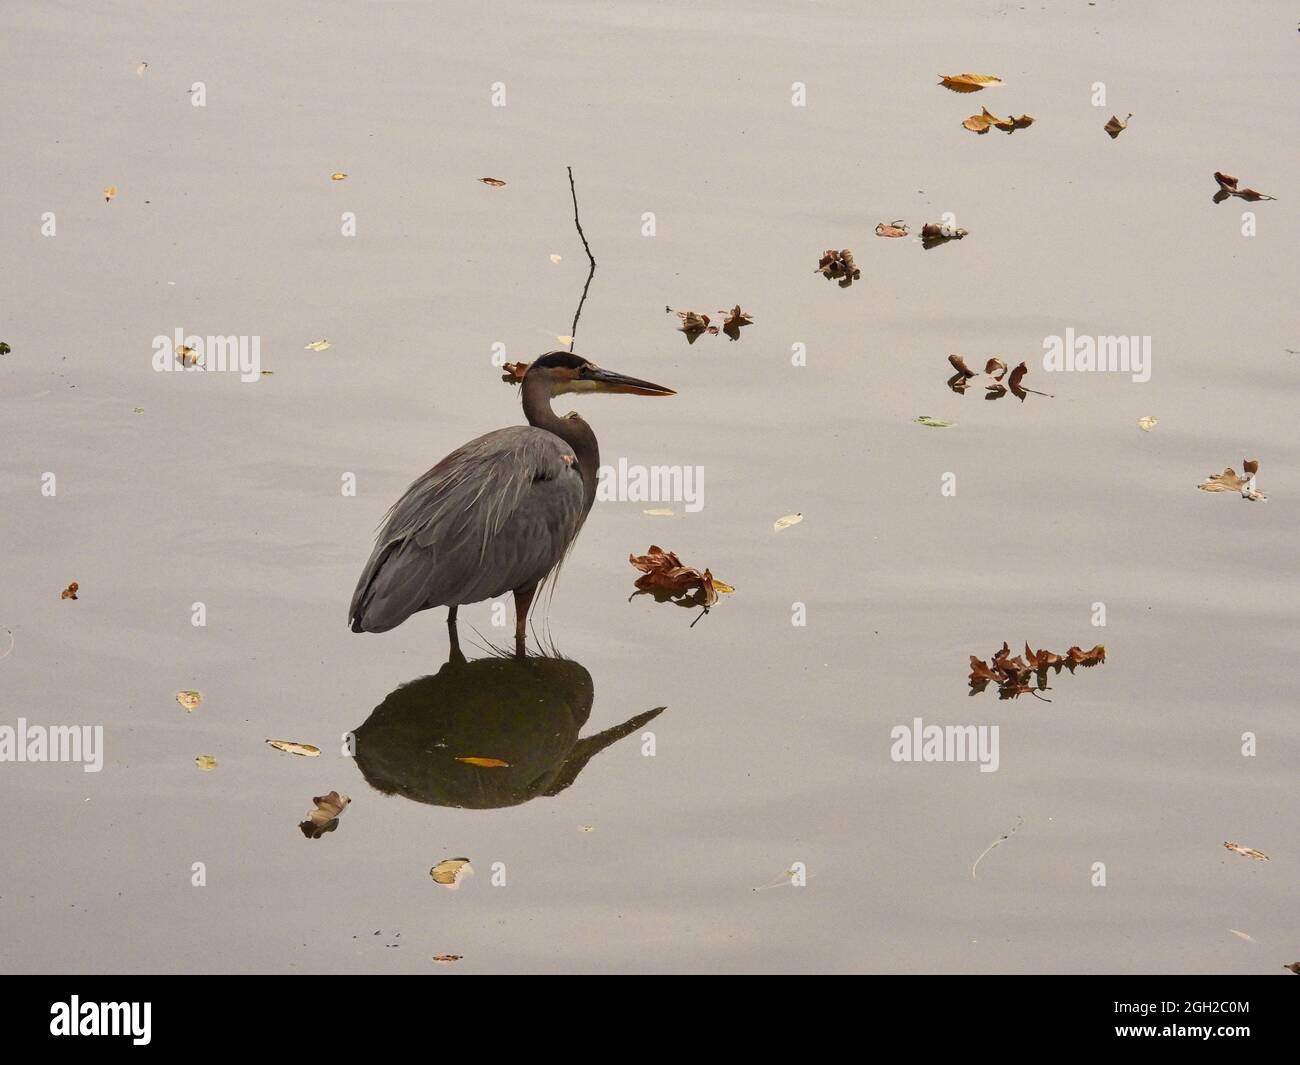 Heron in piedi in acqua: Un grande uccello di airone blu si erge in acque poco profonde in un giorno di caduta coperto con le foglie d'autunno che galleggiano nell'acqua vicina Foto Stock